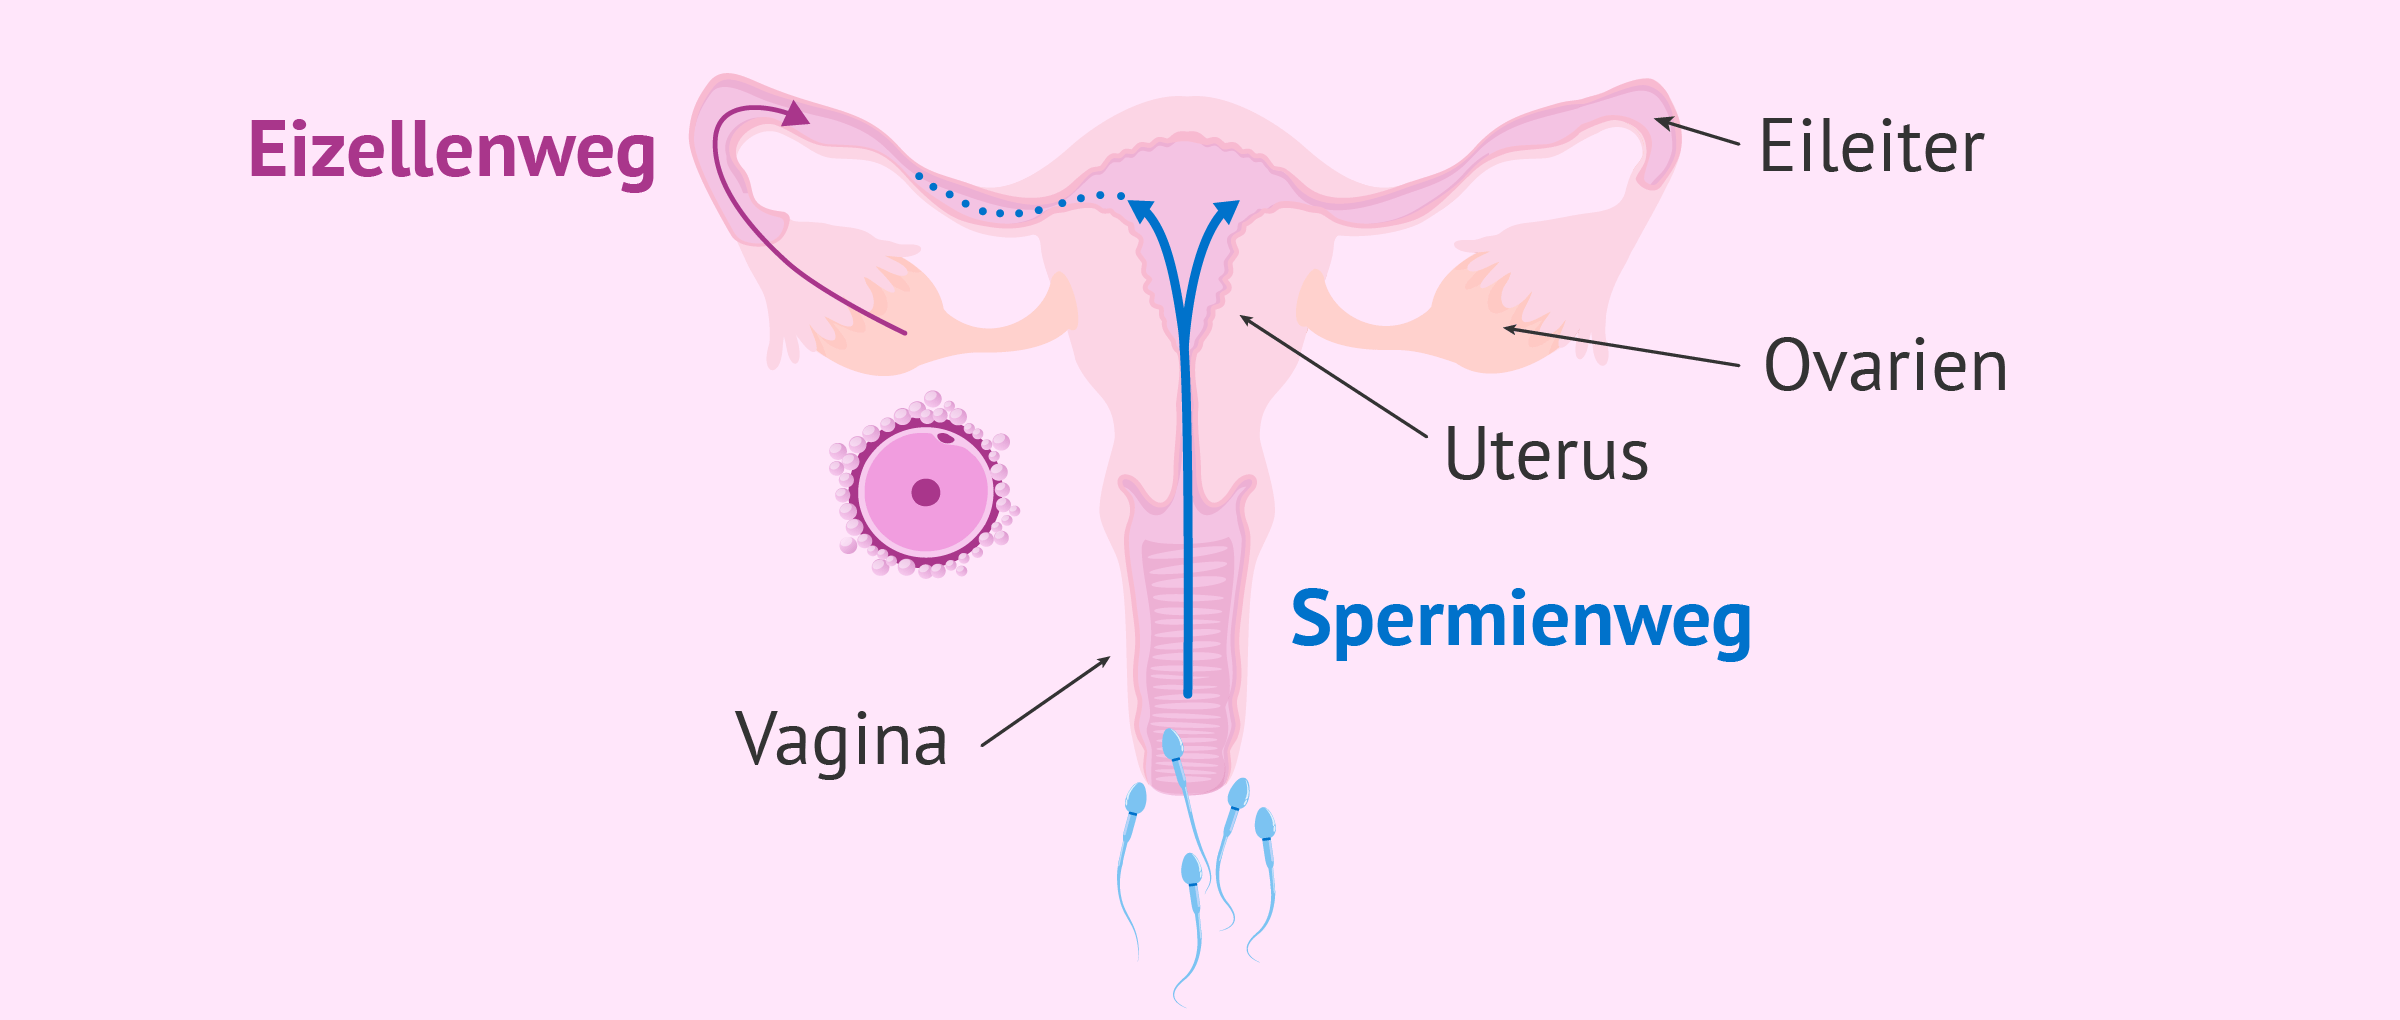 Ejakulation und Aufstieg der Spermien in Richtung Eileiter